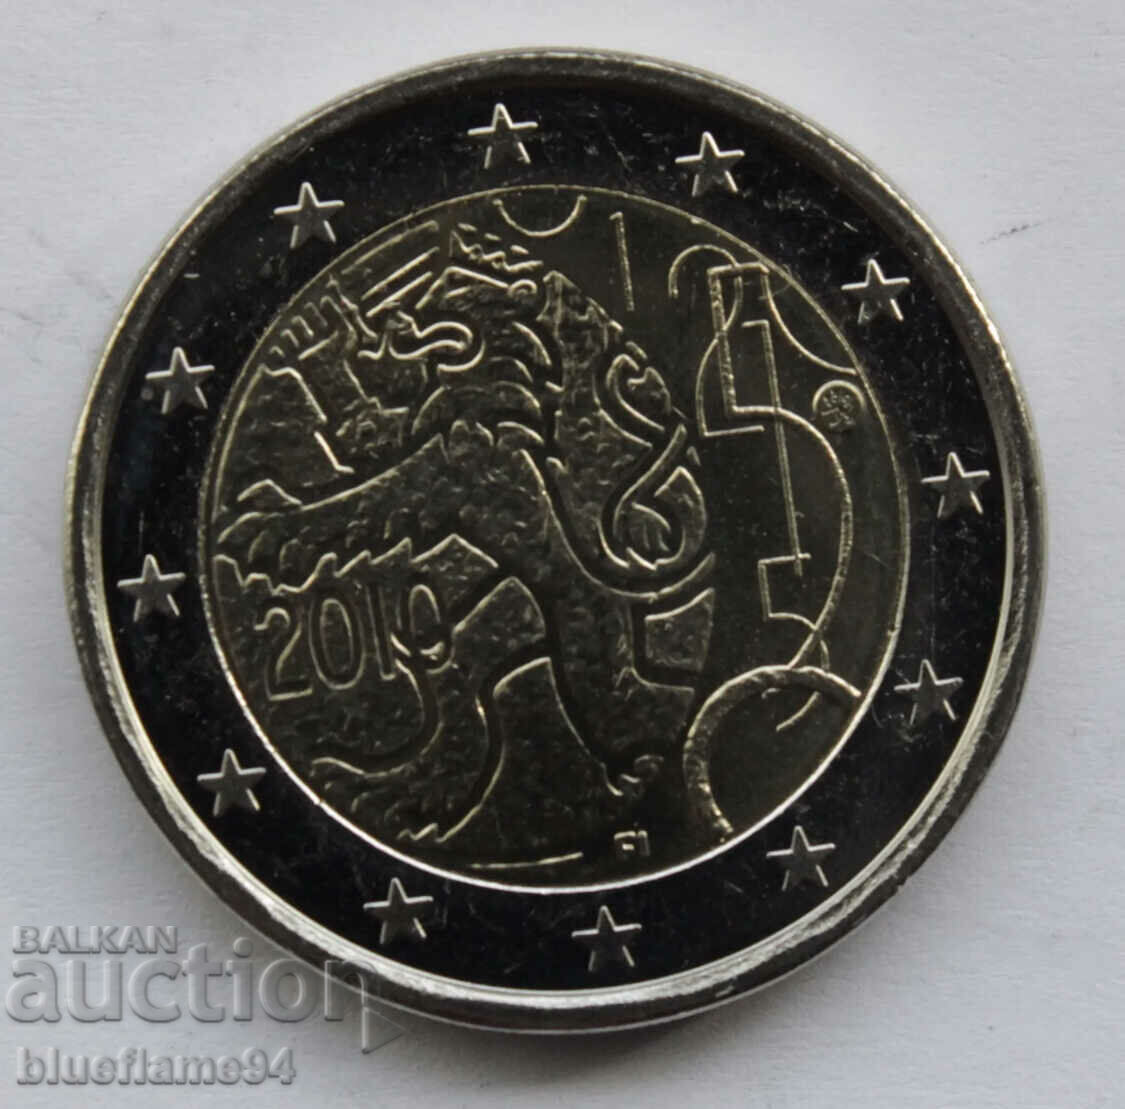 2 euro Finland 2010